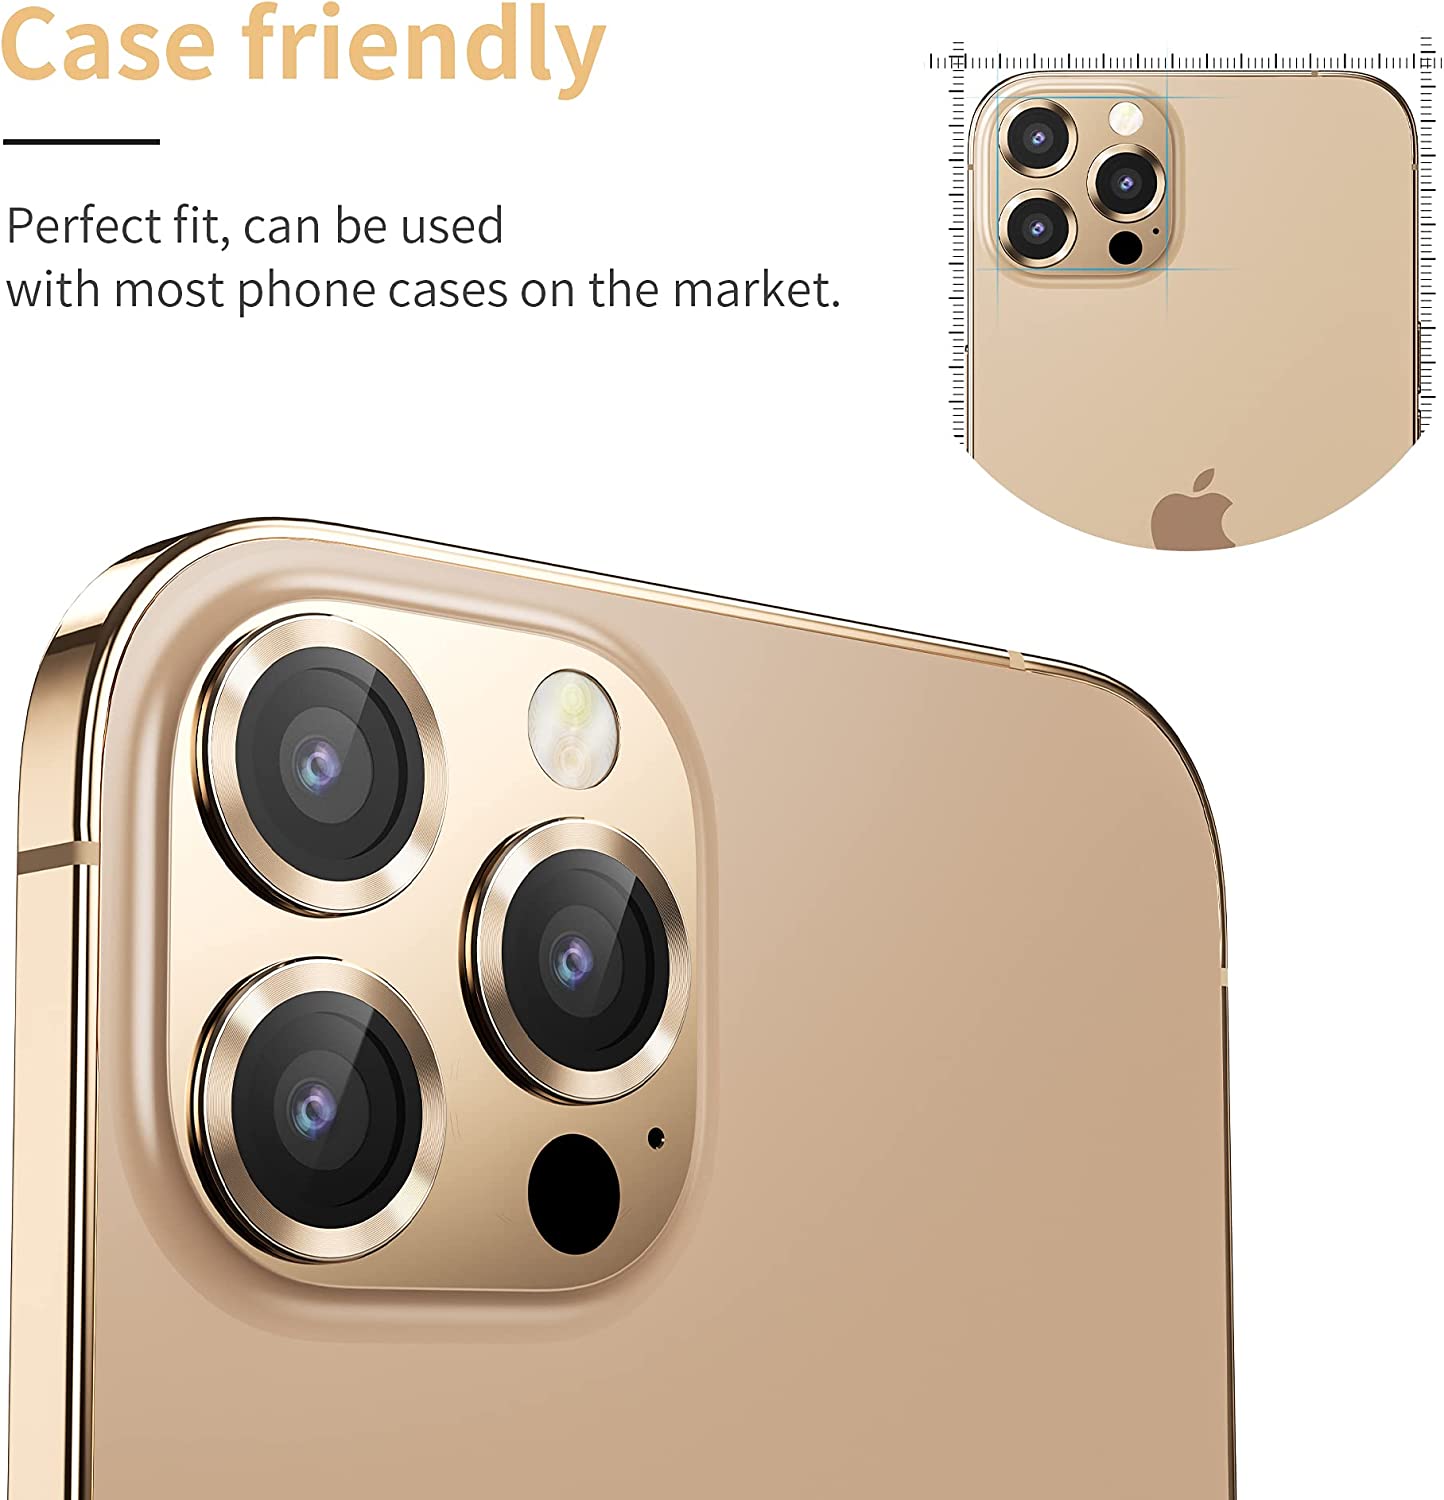 Vidrio Protector Lente De Camara Para iPhone Pro / 13 Pro Max | Slink Premium Cases